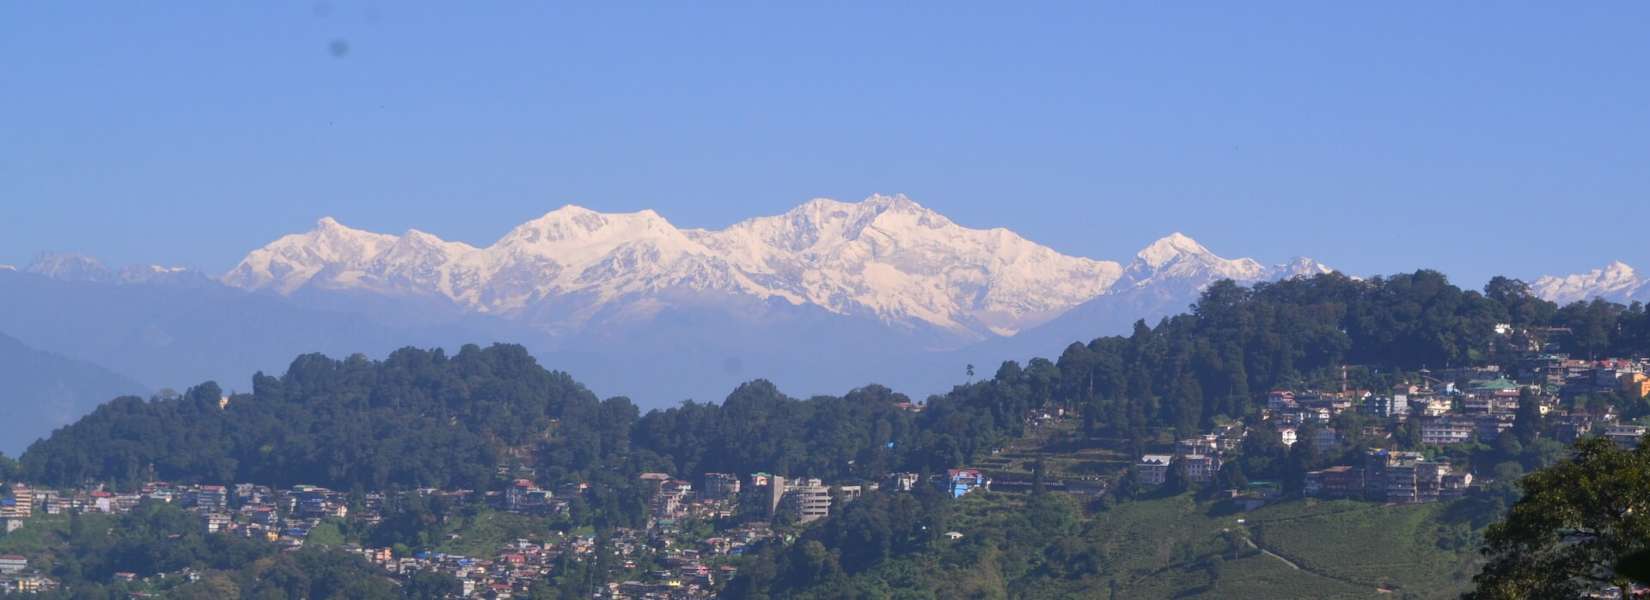 Darjeeling Tourism